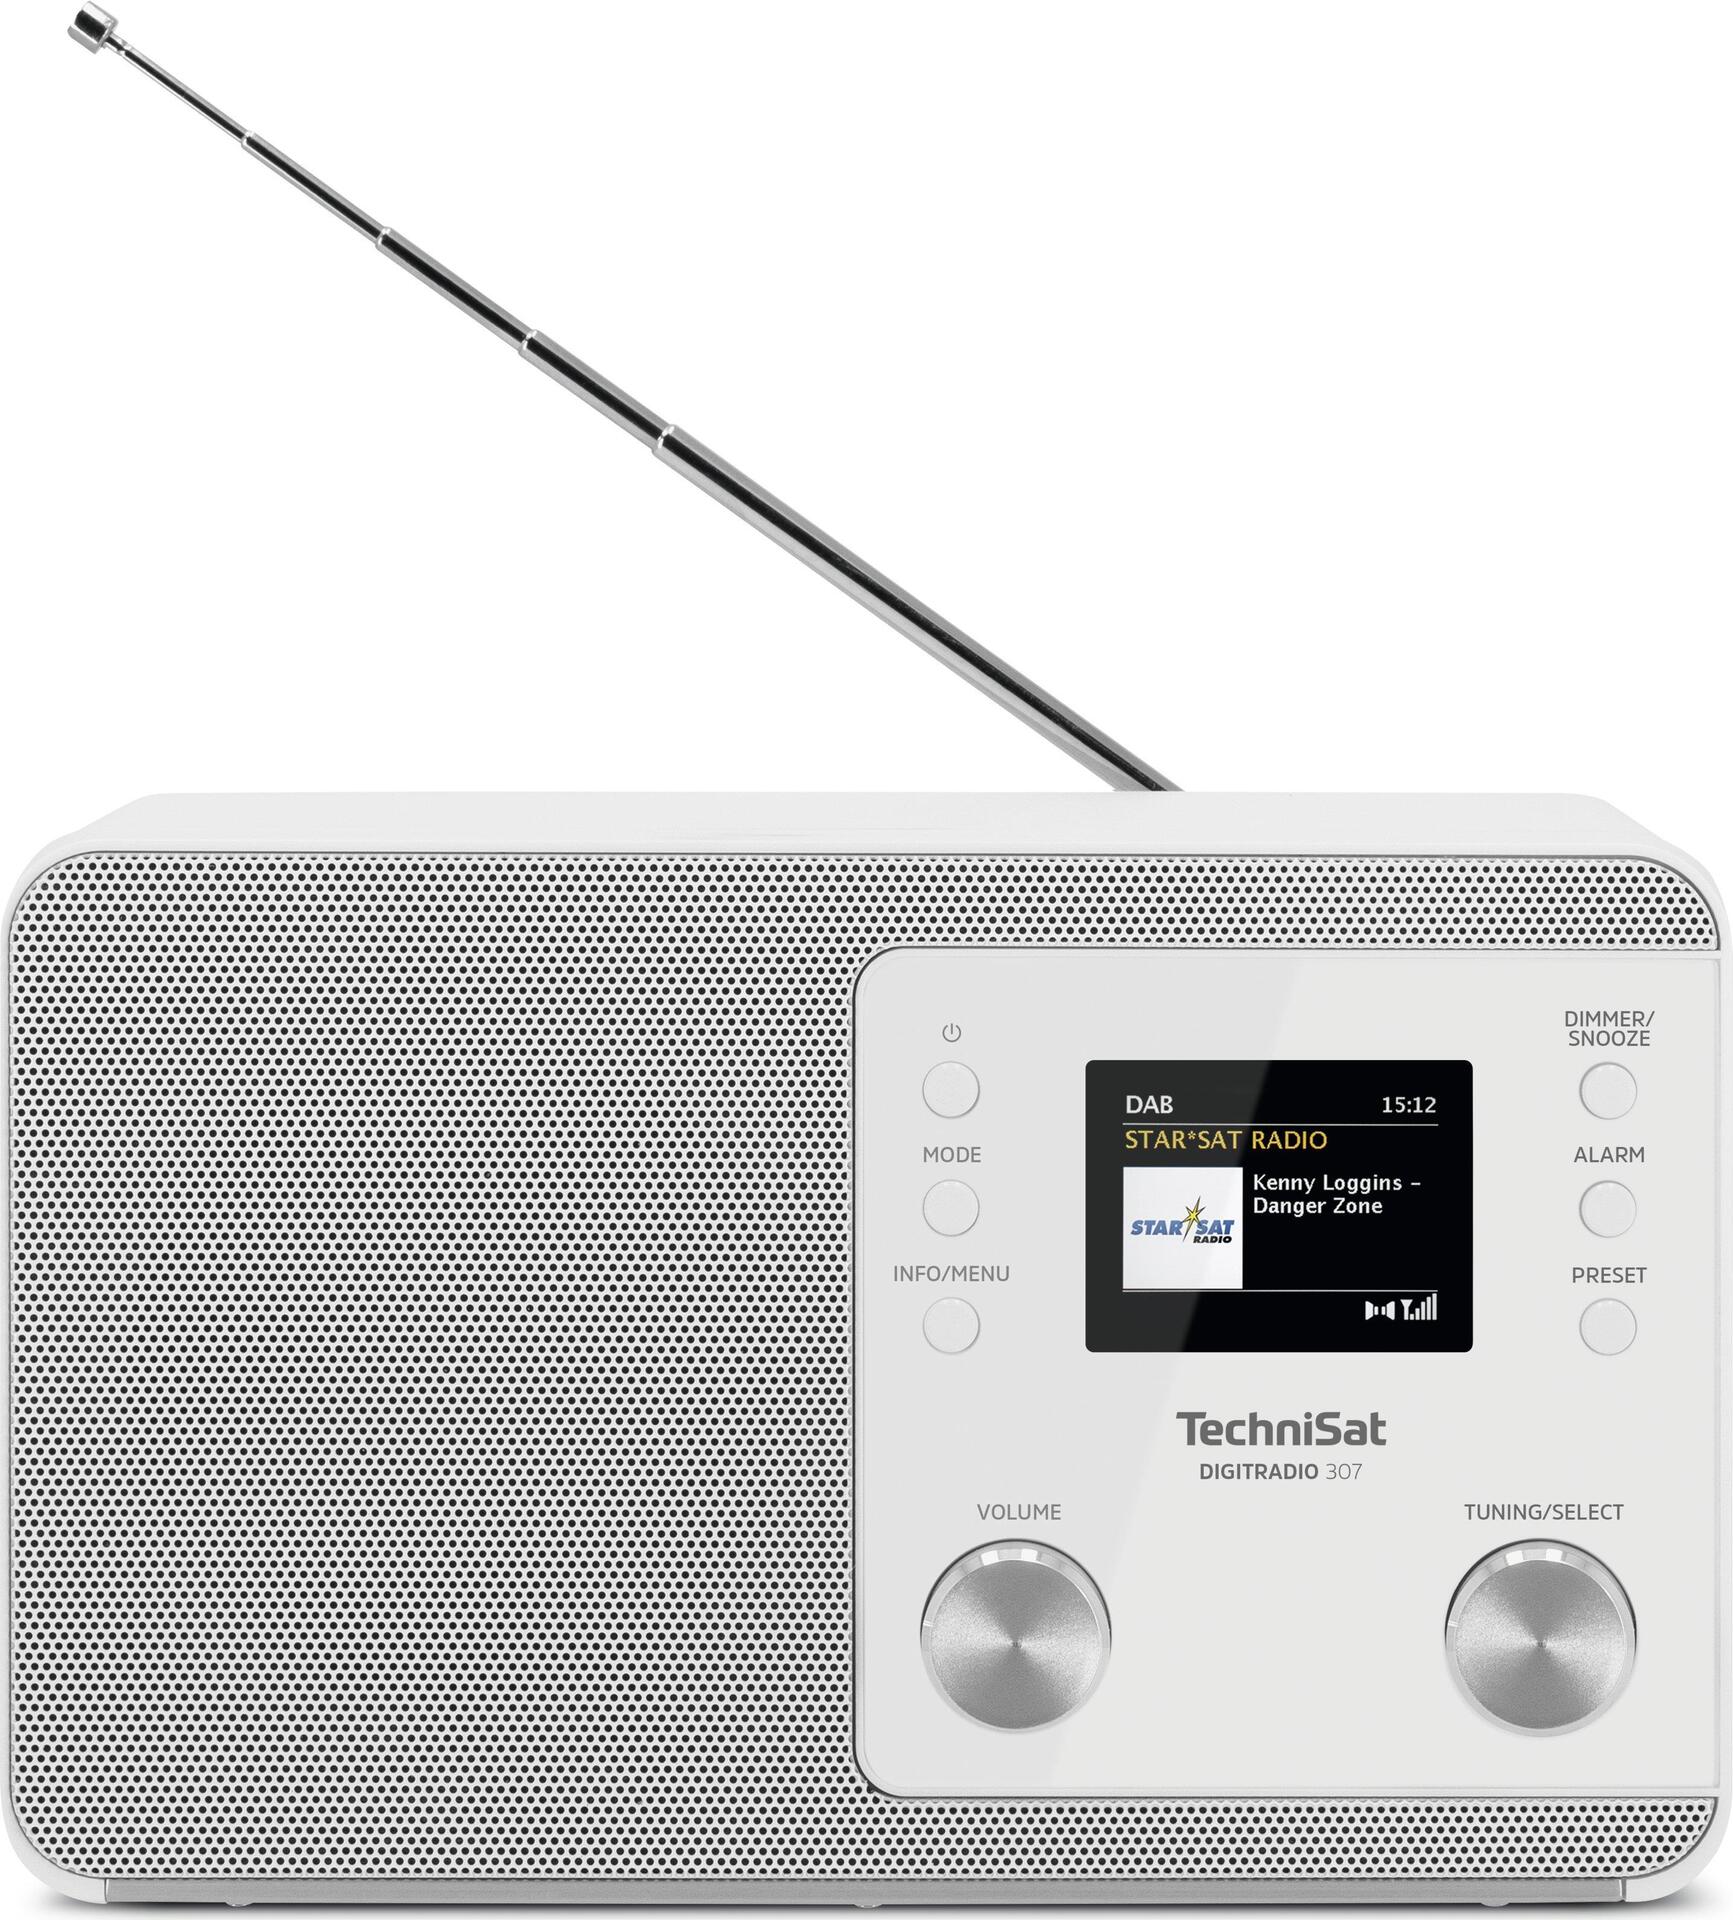 TechniSat DigitRadio 307 - DAB-Radio - 5 Watt (Gesamt) - weiß von Technisat